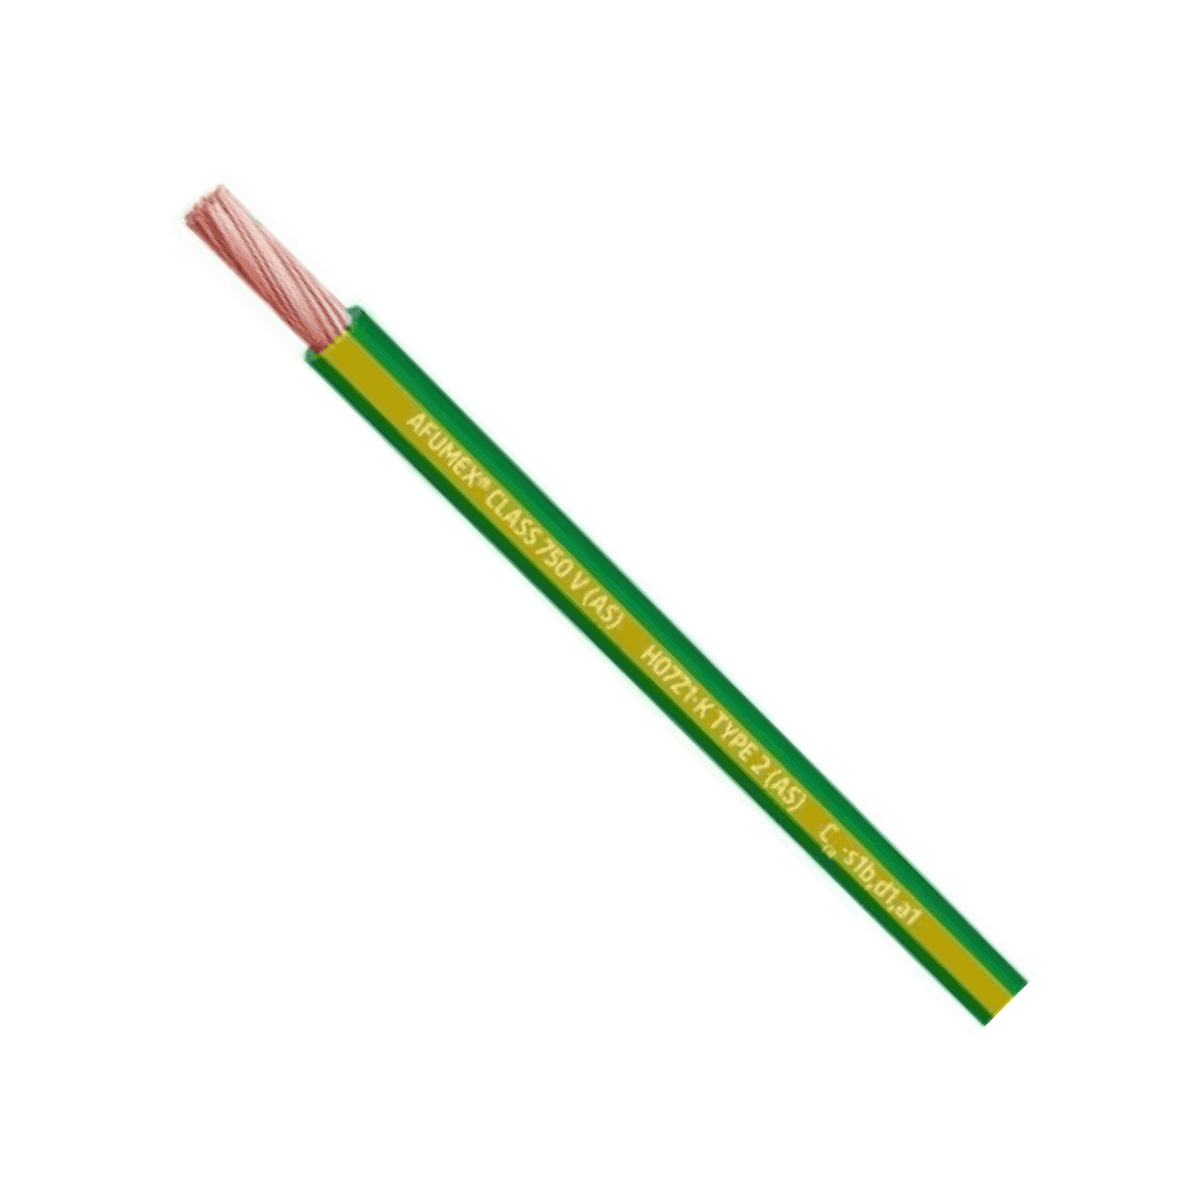 Cable Afumex H07Z1-K AS 750 1x1.5mm2 amarillo-verde - Caja de 200 metros con referencia 20193976 de la marca PRYSMIAN